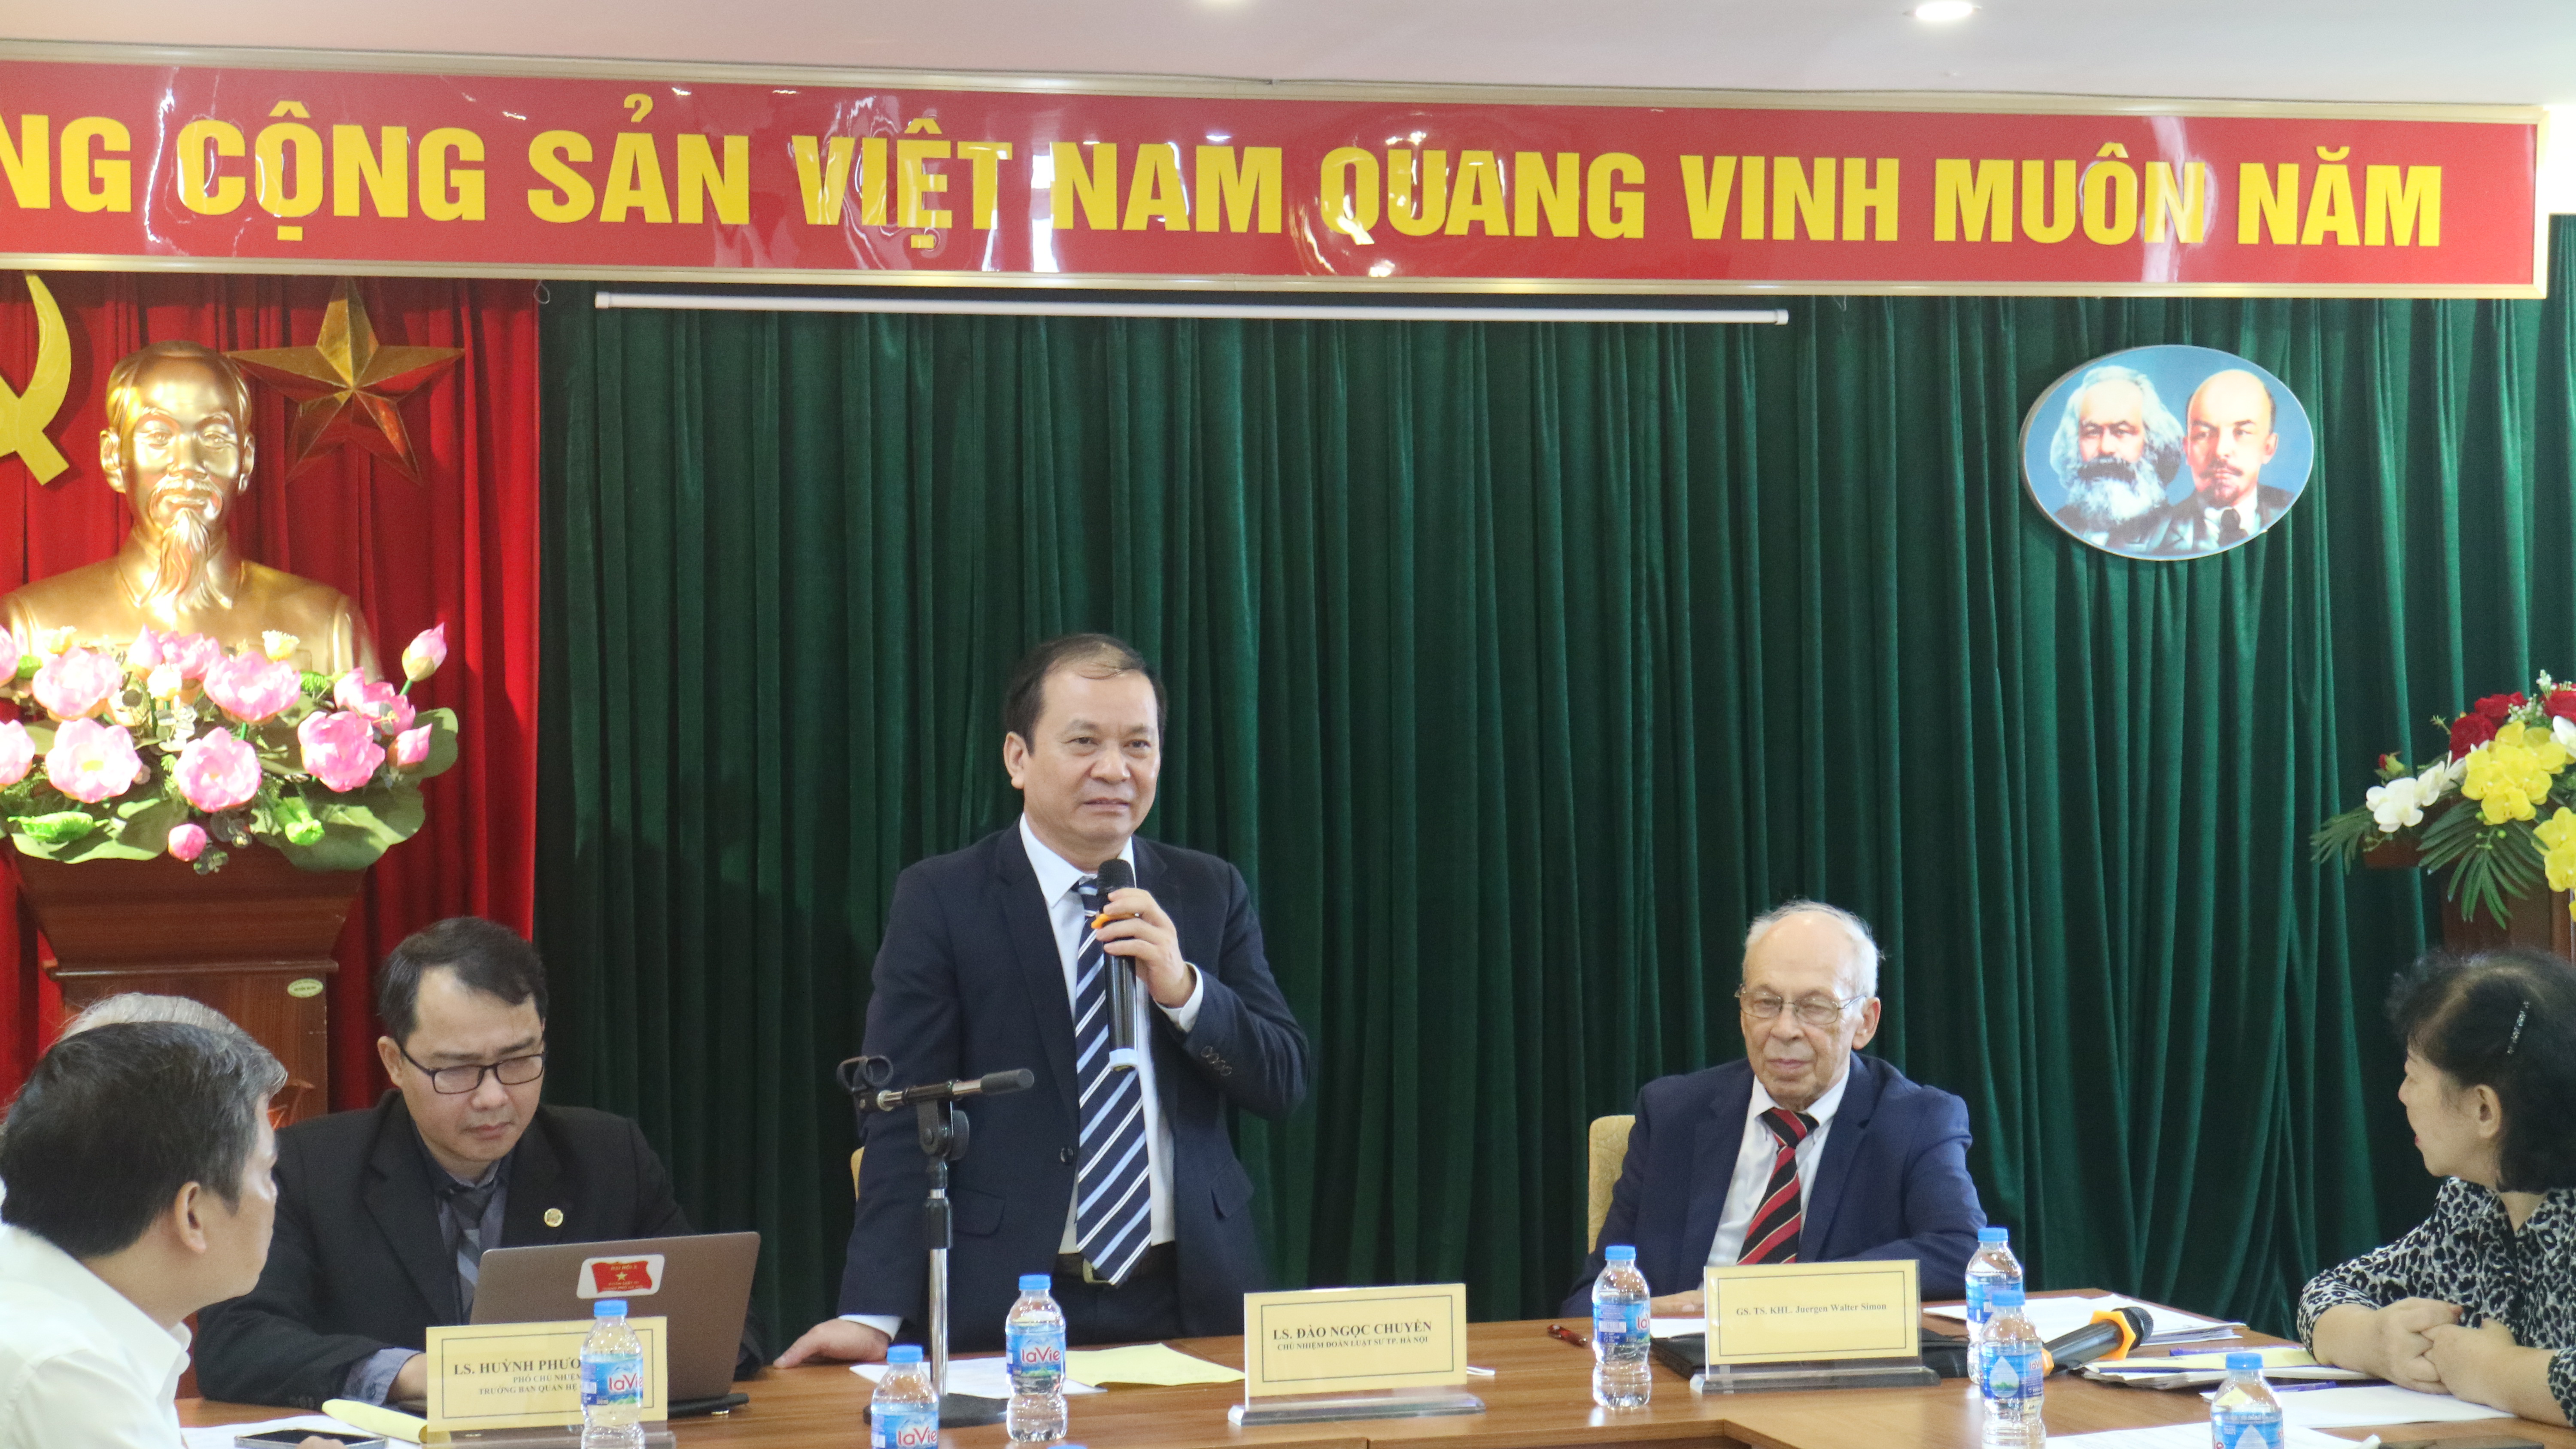 Đoàn Luật sư thành phố Hà Nội tổ chức lớp bồi dưỡng chuyên môn về hợp đồng thương mại quốc tế